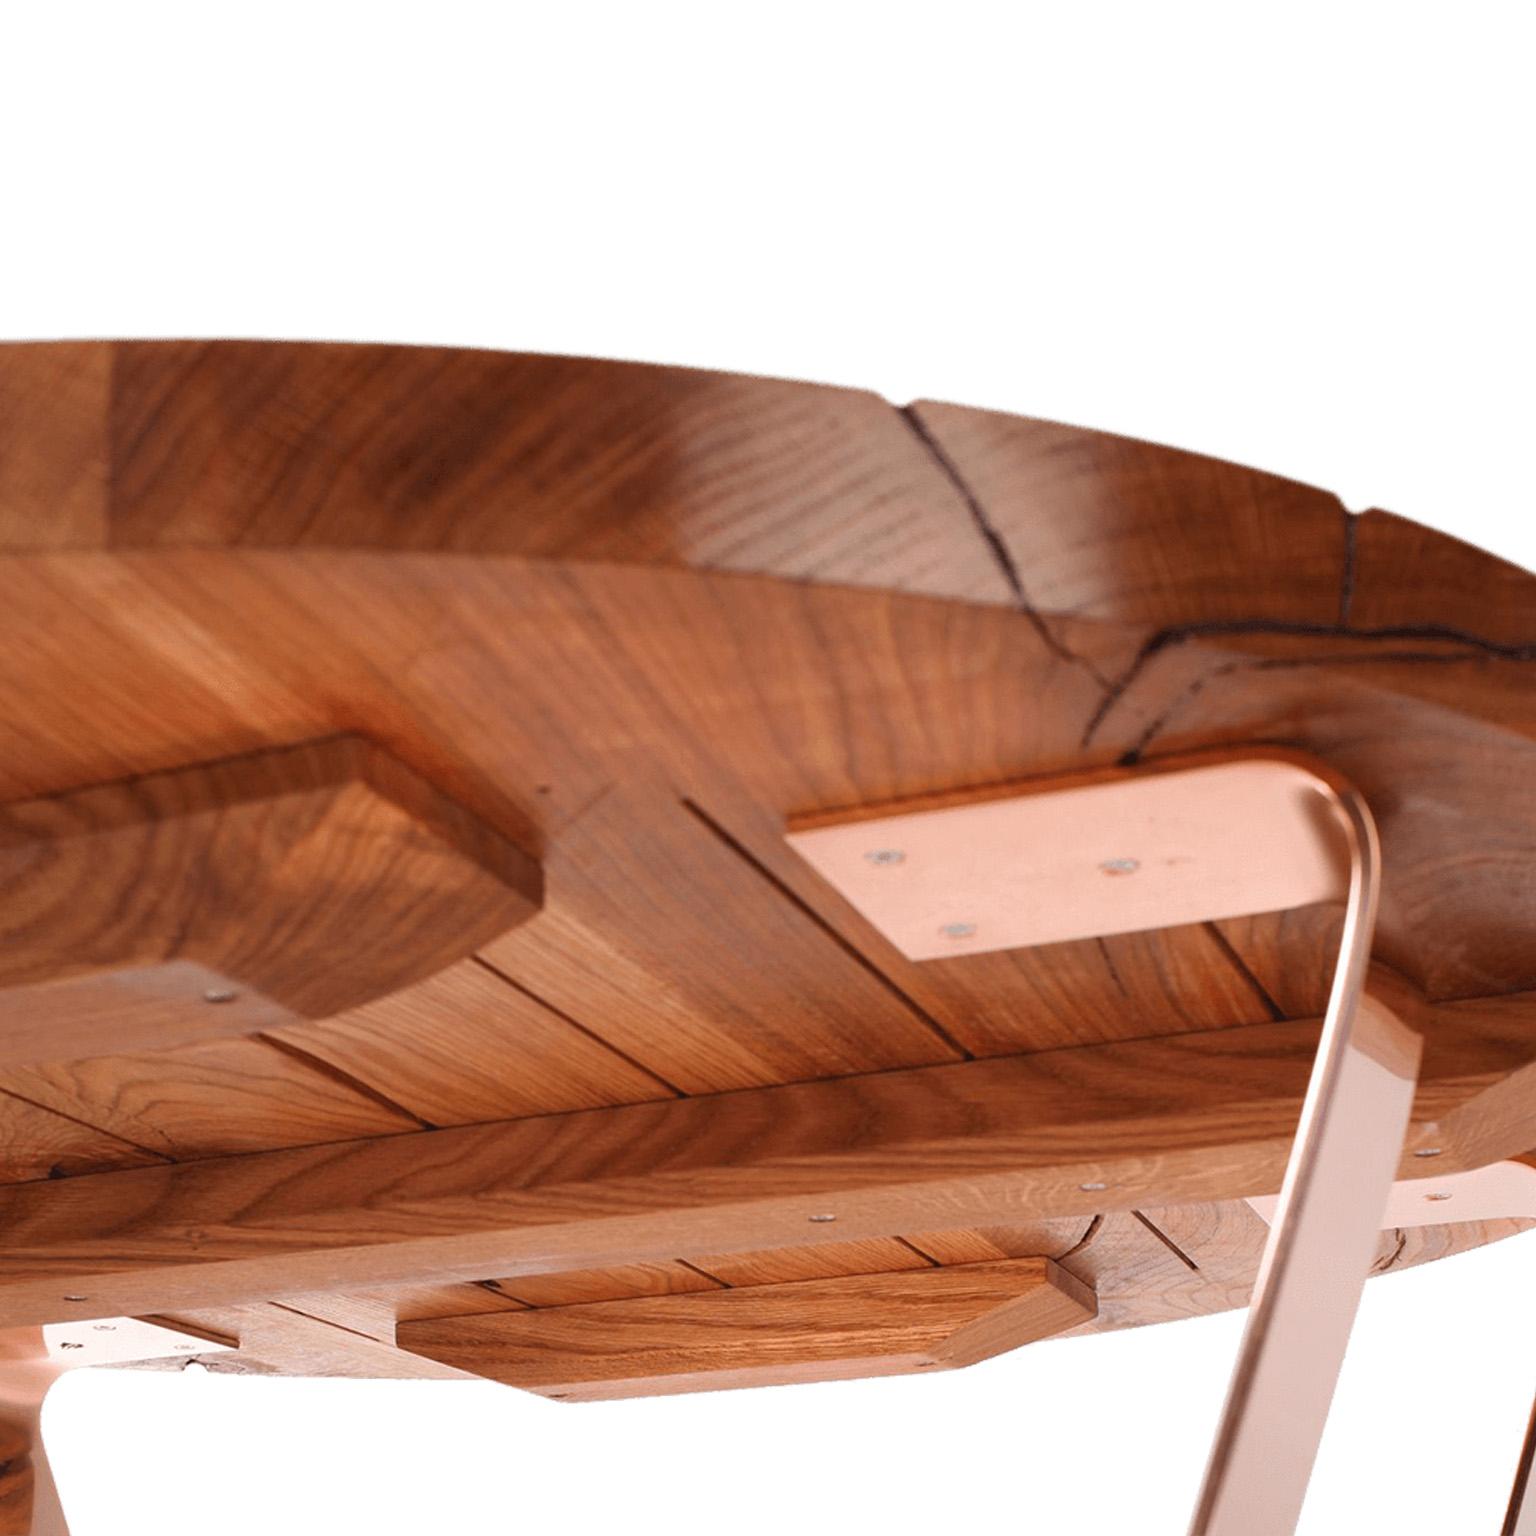 Dieser luxuriöse Couchtisch kombiniert edles, massives Holz mit glänzenden Kupferbeinen. Die feine Oberfläche fühlt sich wunderbar glatt an und sieht fantastisch aus. Eine Kupfereinlage wird sorgfältig in eine alte Eiche eingelassen. Dieser Tisch